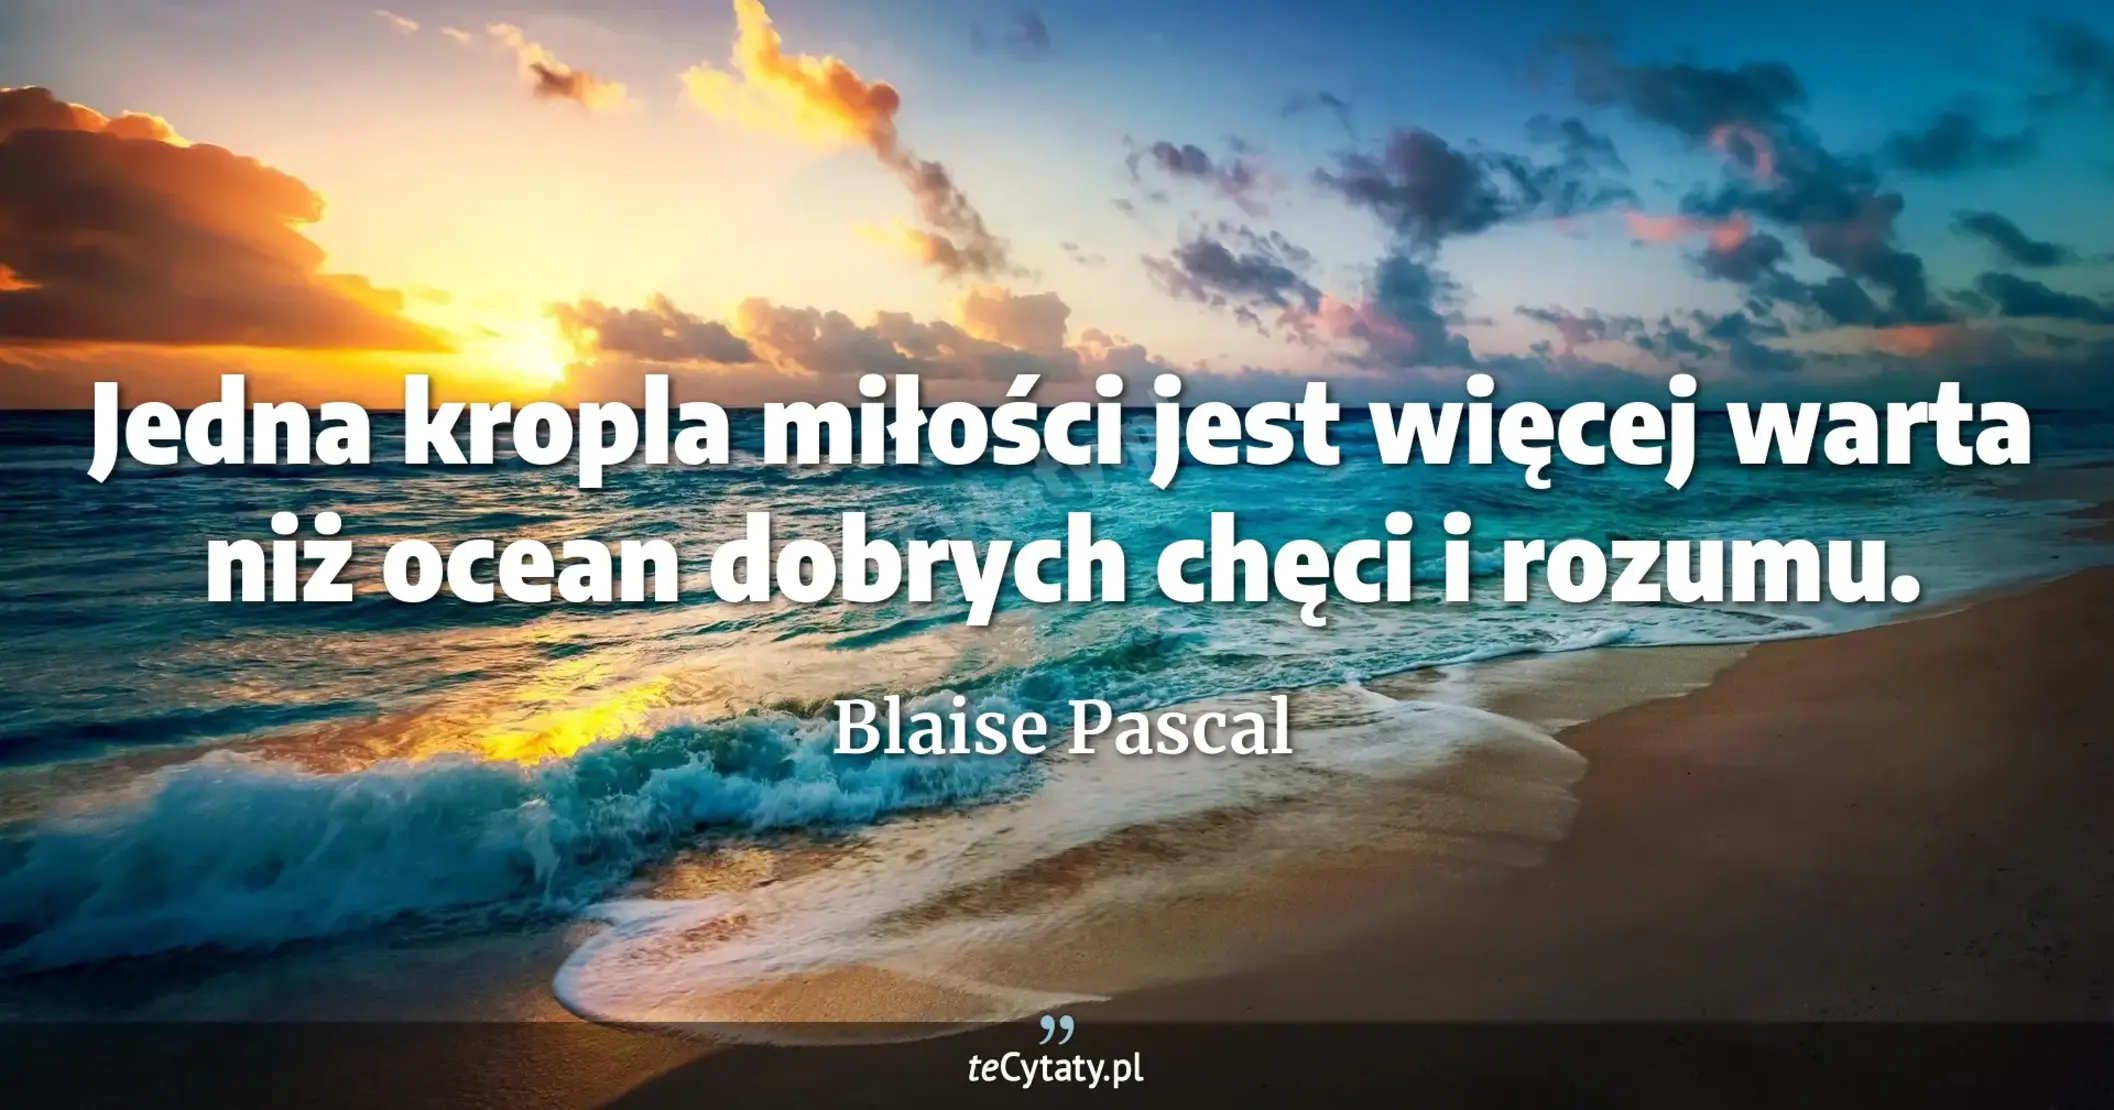 Jedna kropla miłości jest więcej warta niż ocean dobrych chęci i rozumu. - Blaise Pascal